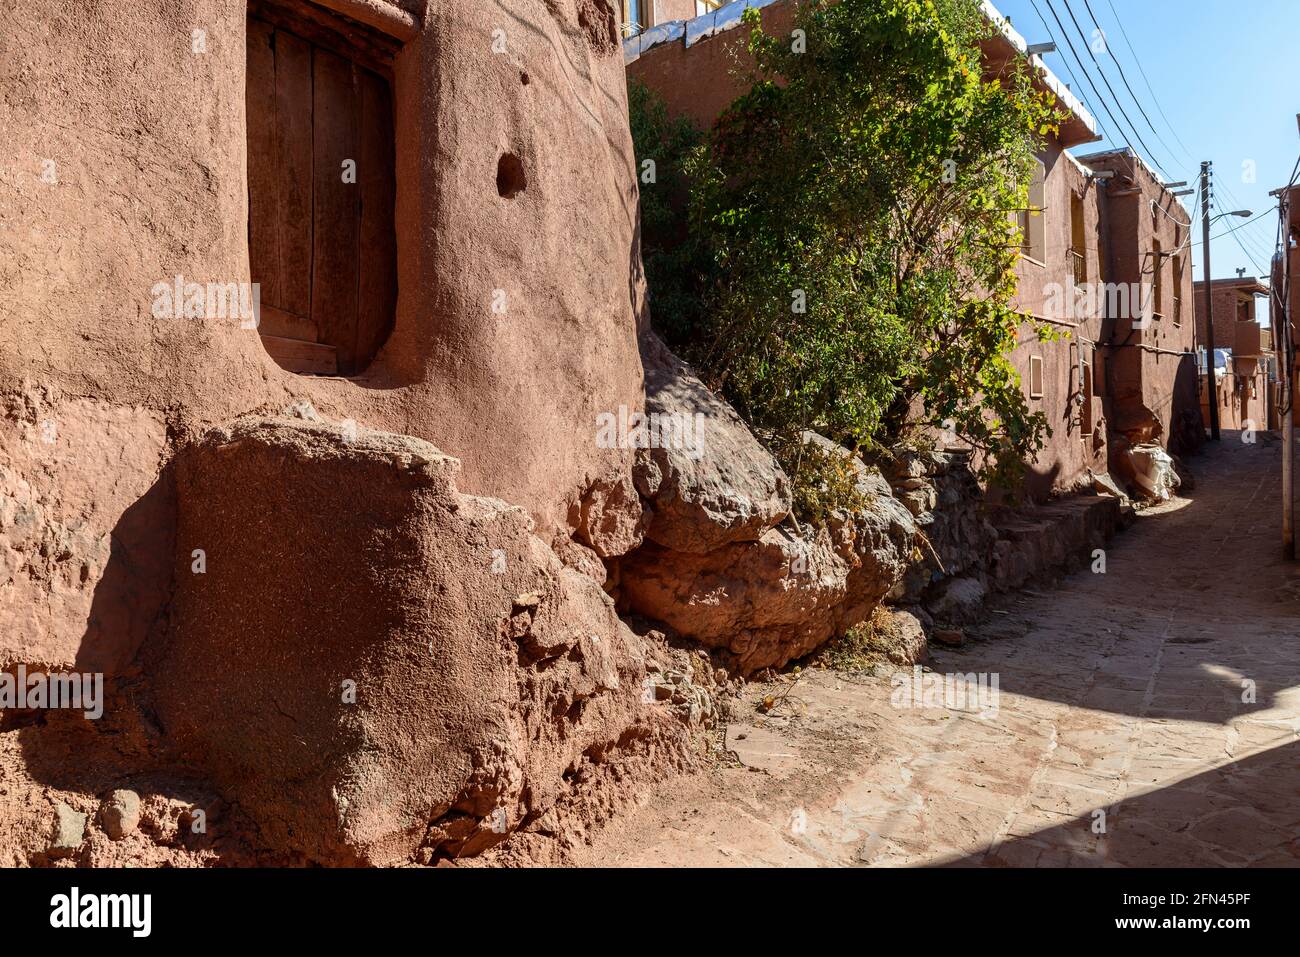 Tubi di terra di colore rosso nell'antico villaggio Abyaneh, provincia di Isfahan, Iran. Foto Stock